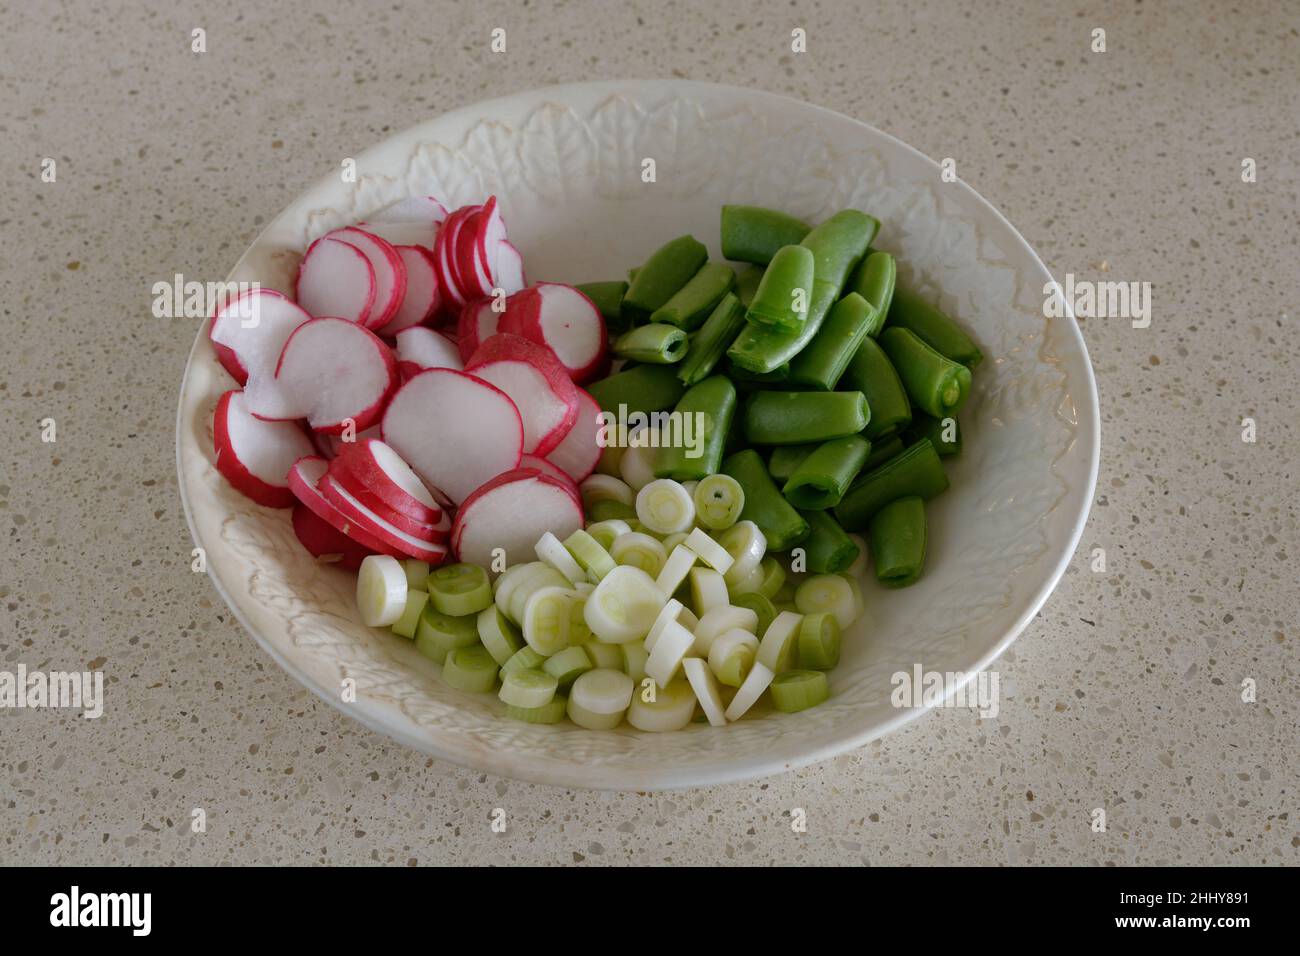 Frische Salatzutaten - Rettich, Frühlingszwiebeln, Zuckererbsen, die in einer weißen Schüssel auf beigem Hintergrund gehackt wurden Stockfoto